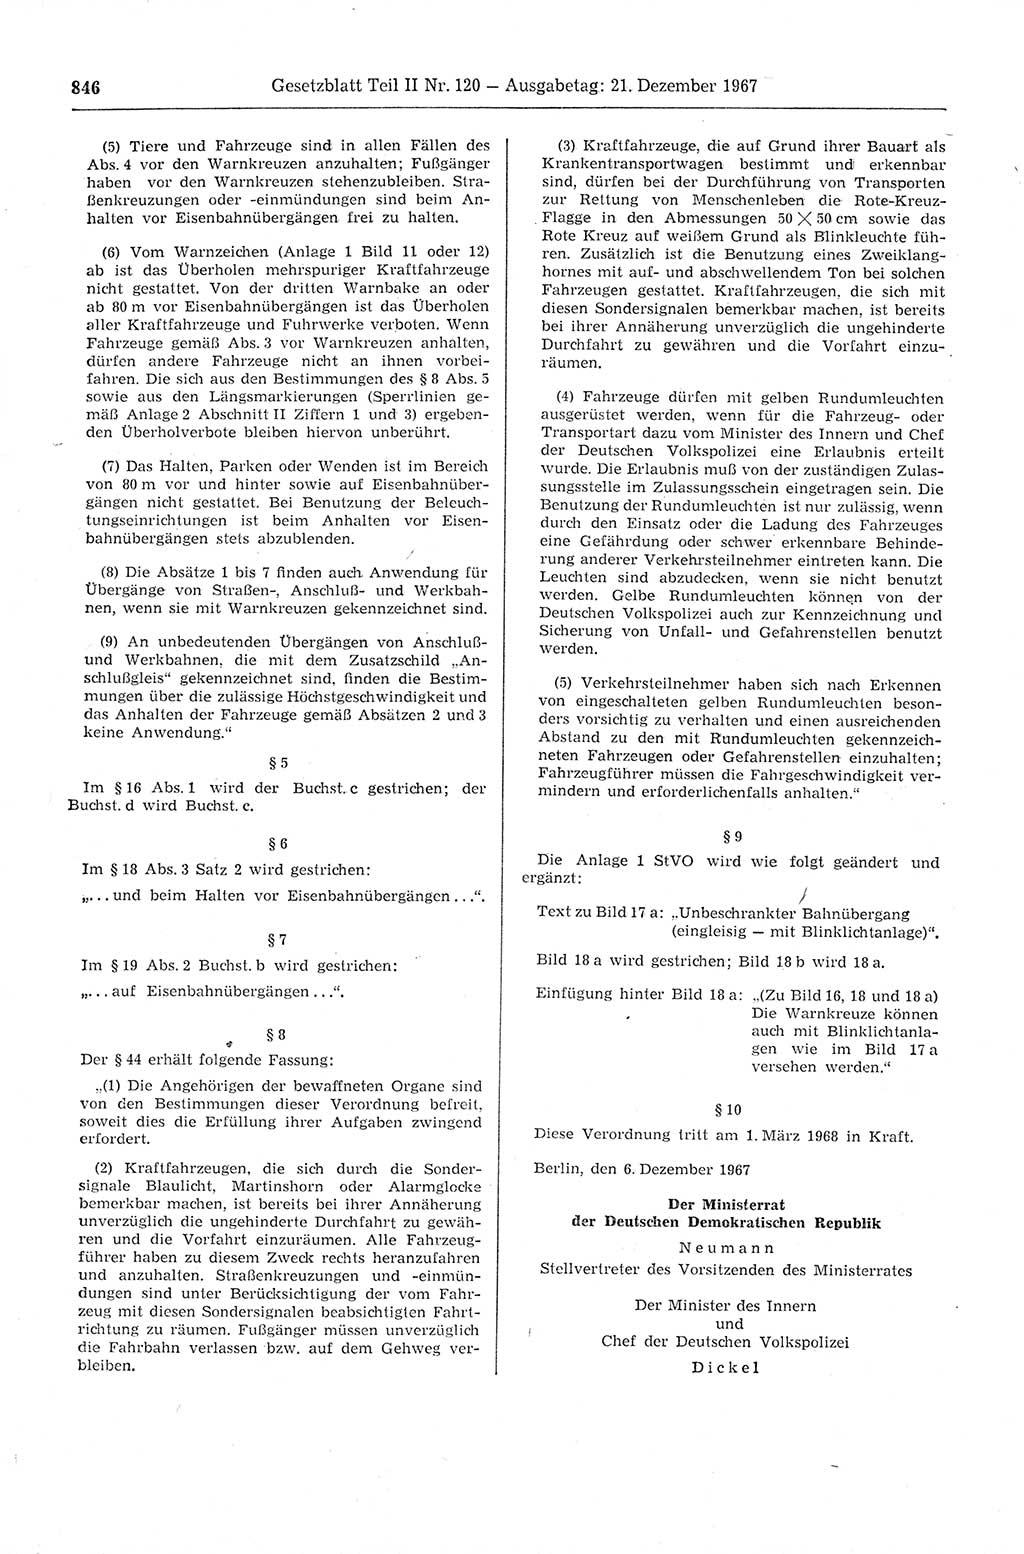 Gesetzblatt (GBl.) der Deutschen Demokratischen Republik (DDR) Teil ⅠⅠ 1967, Seite 846 (GBl. DDR ⅠⅠ 1967, S. 846)